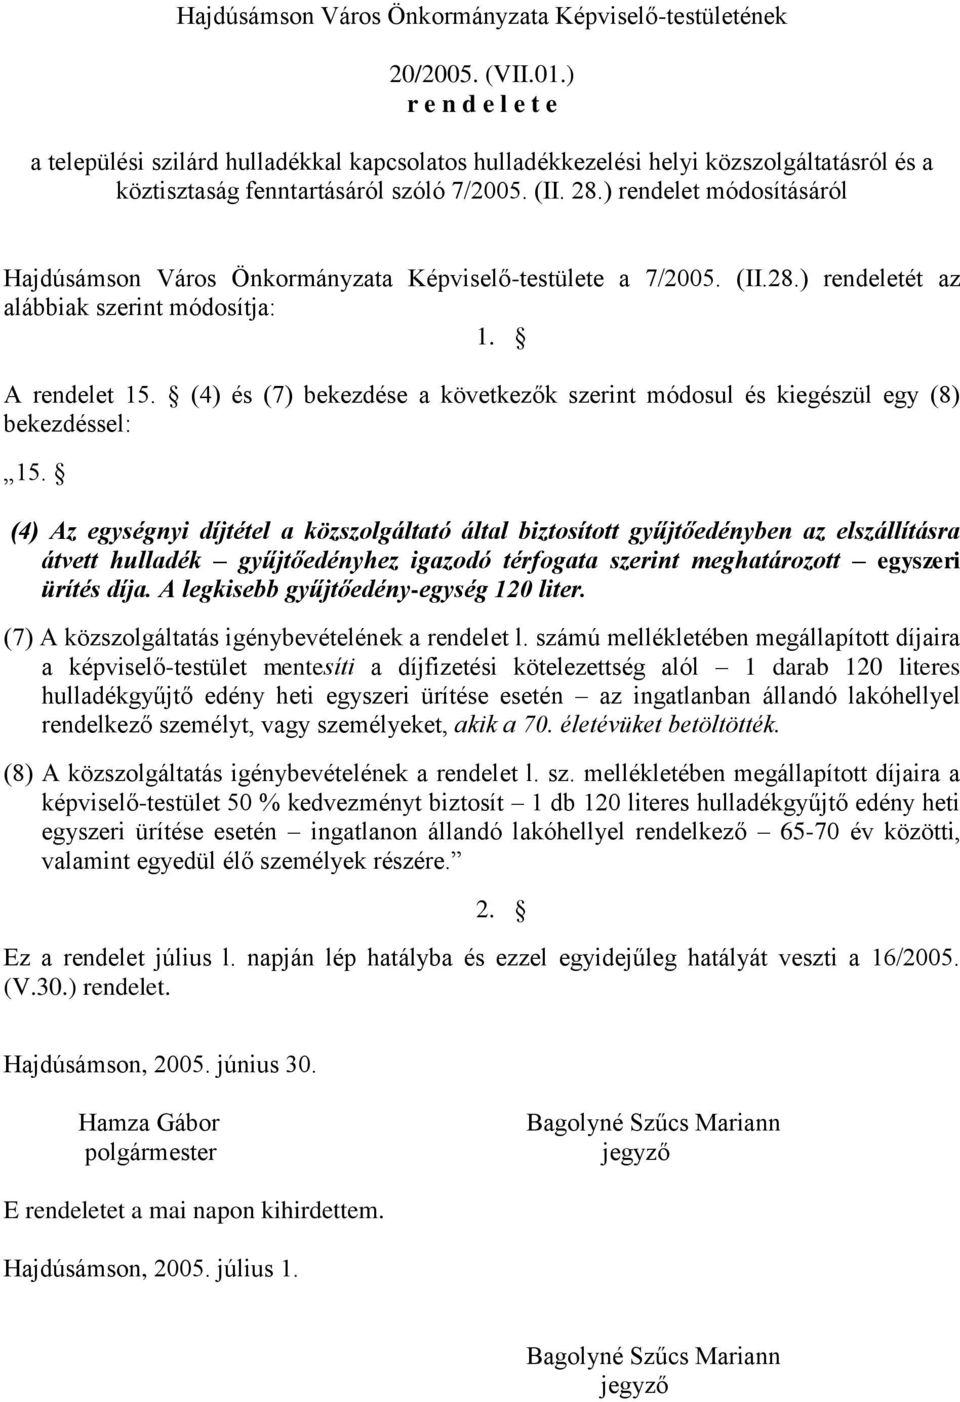 ) rendelet módosításáról Hajdúsámson Város Önkormányzata Képviselő-testülete a 7/2005. (II.28.) rendeletét az alábbiak szerint módosítja: 1. A rendelet 15.